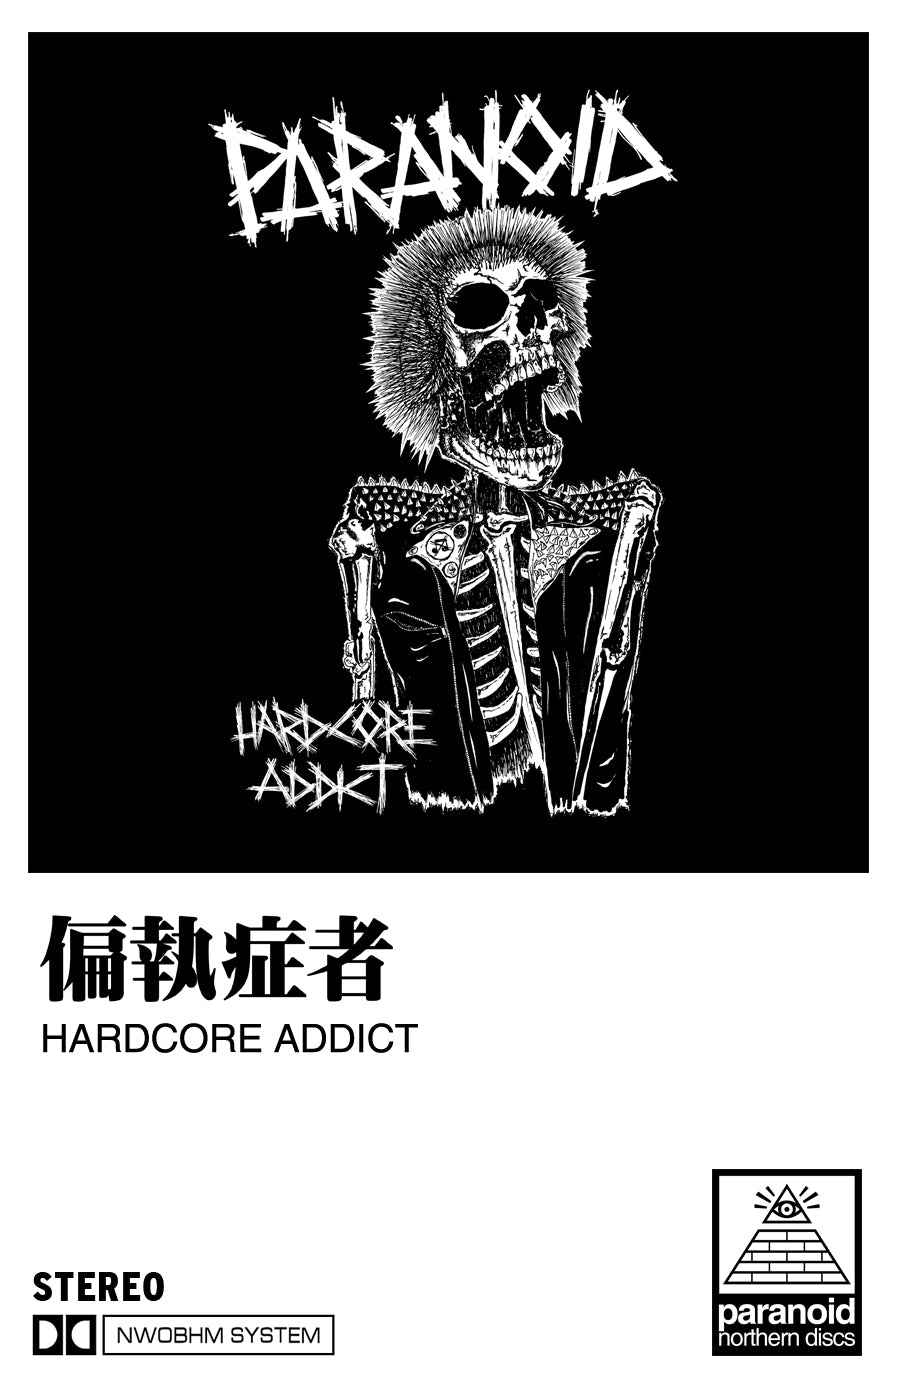 Paranoid: Hardcore Addict cassette